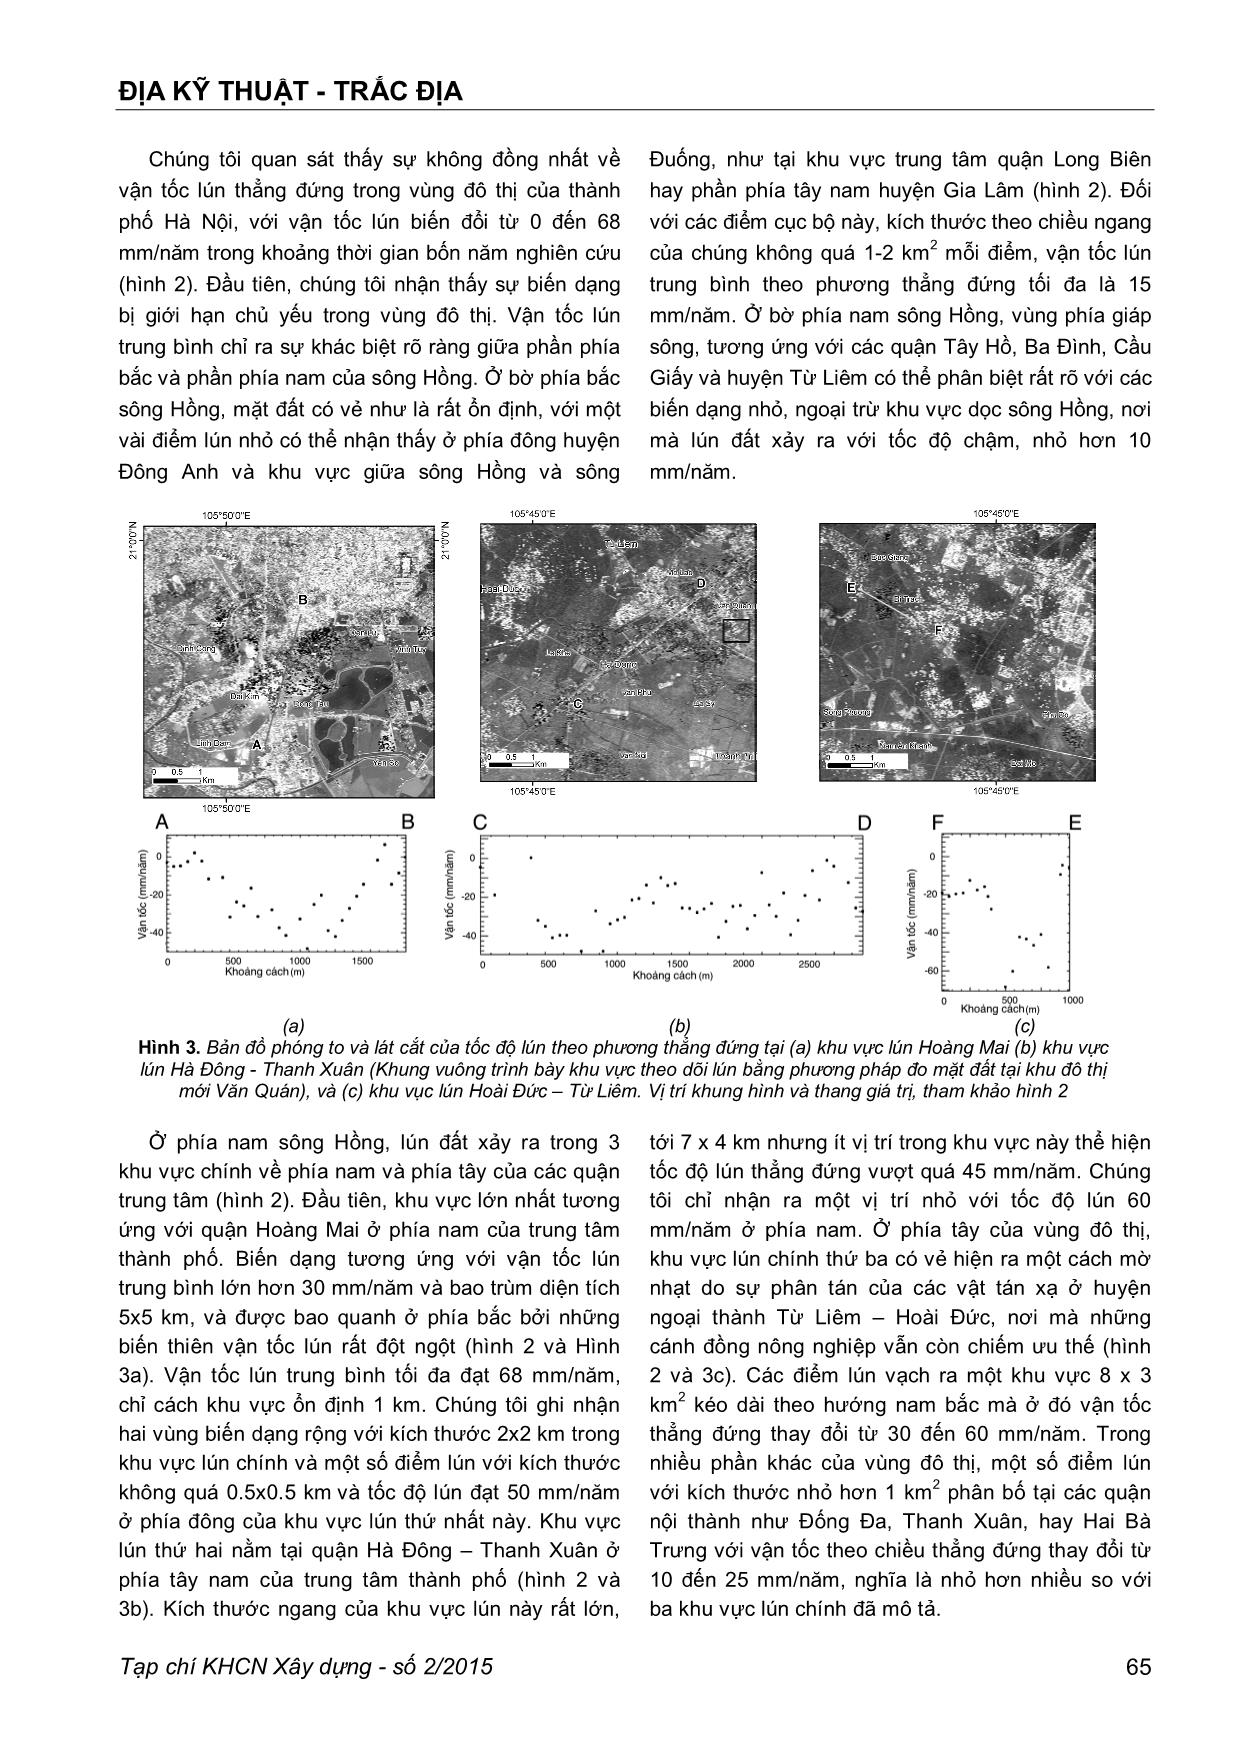 Áp dụng phương pháp giao thoa radar để xác định hiện tượng lún đất trong vùng đô thị trung tâm thành phố Hà Nội trang 5